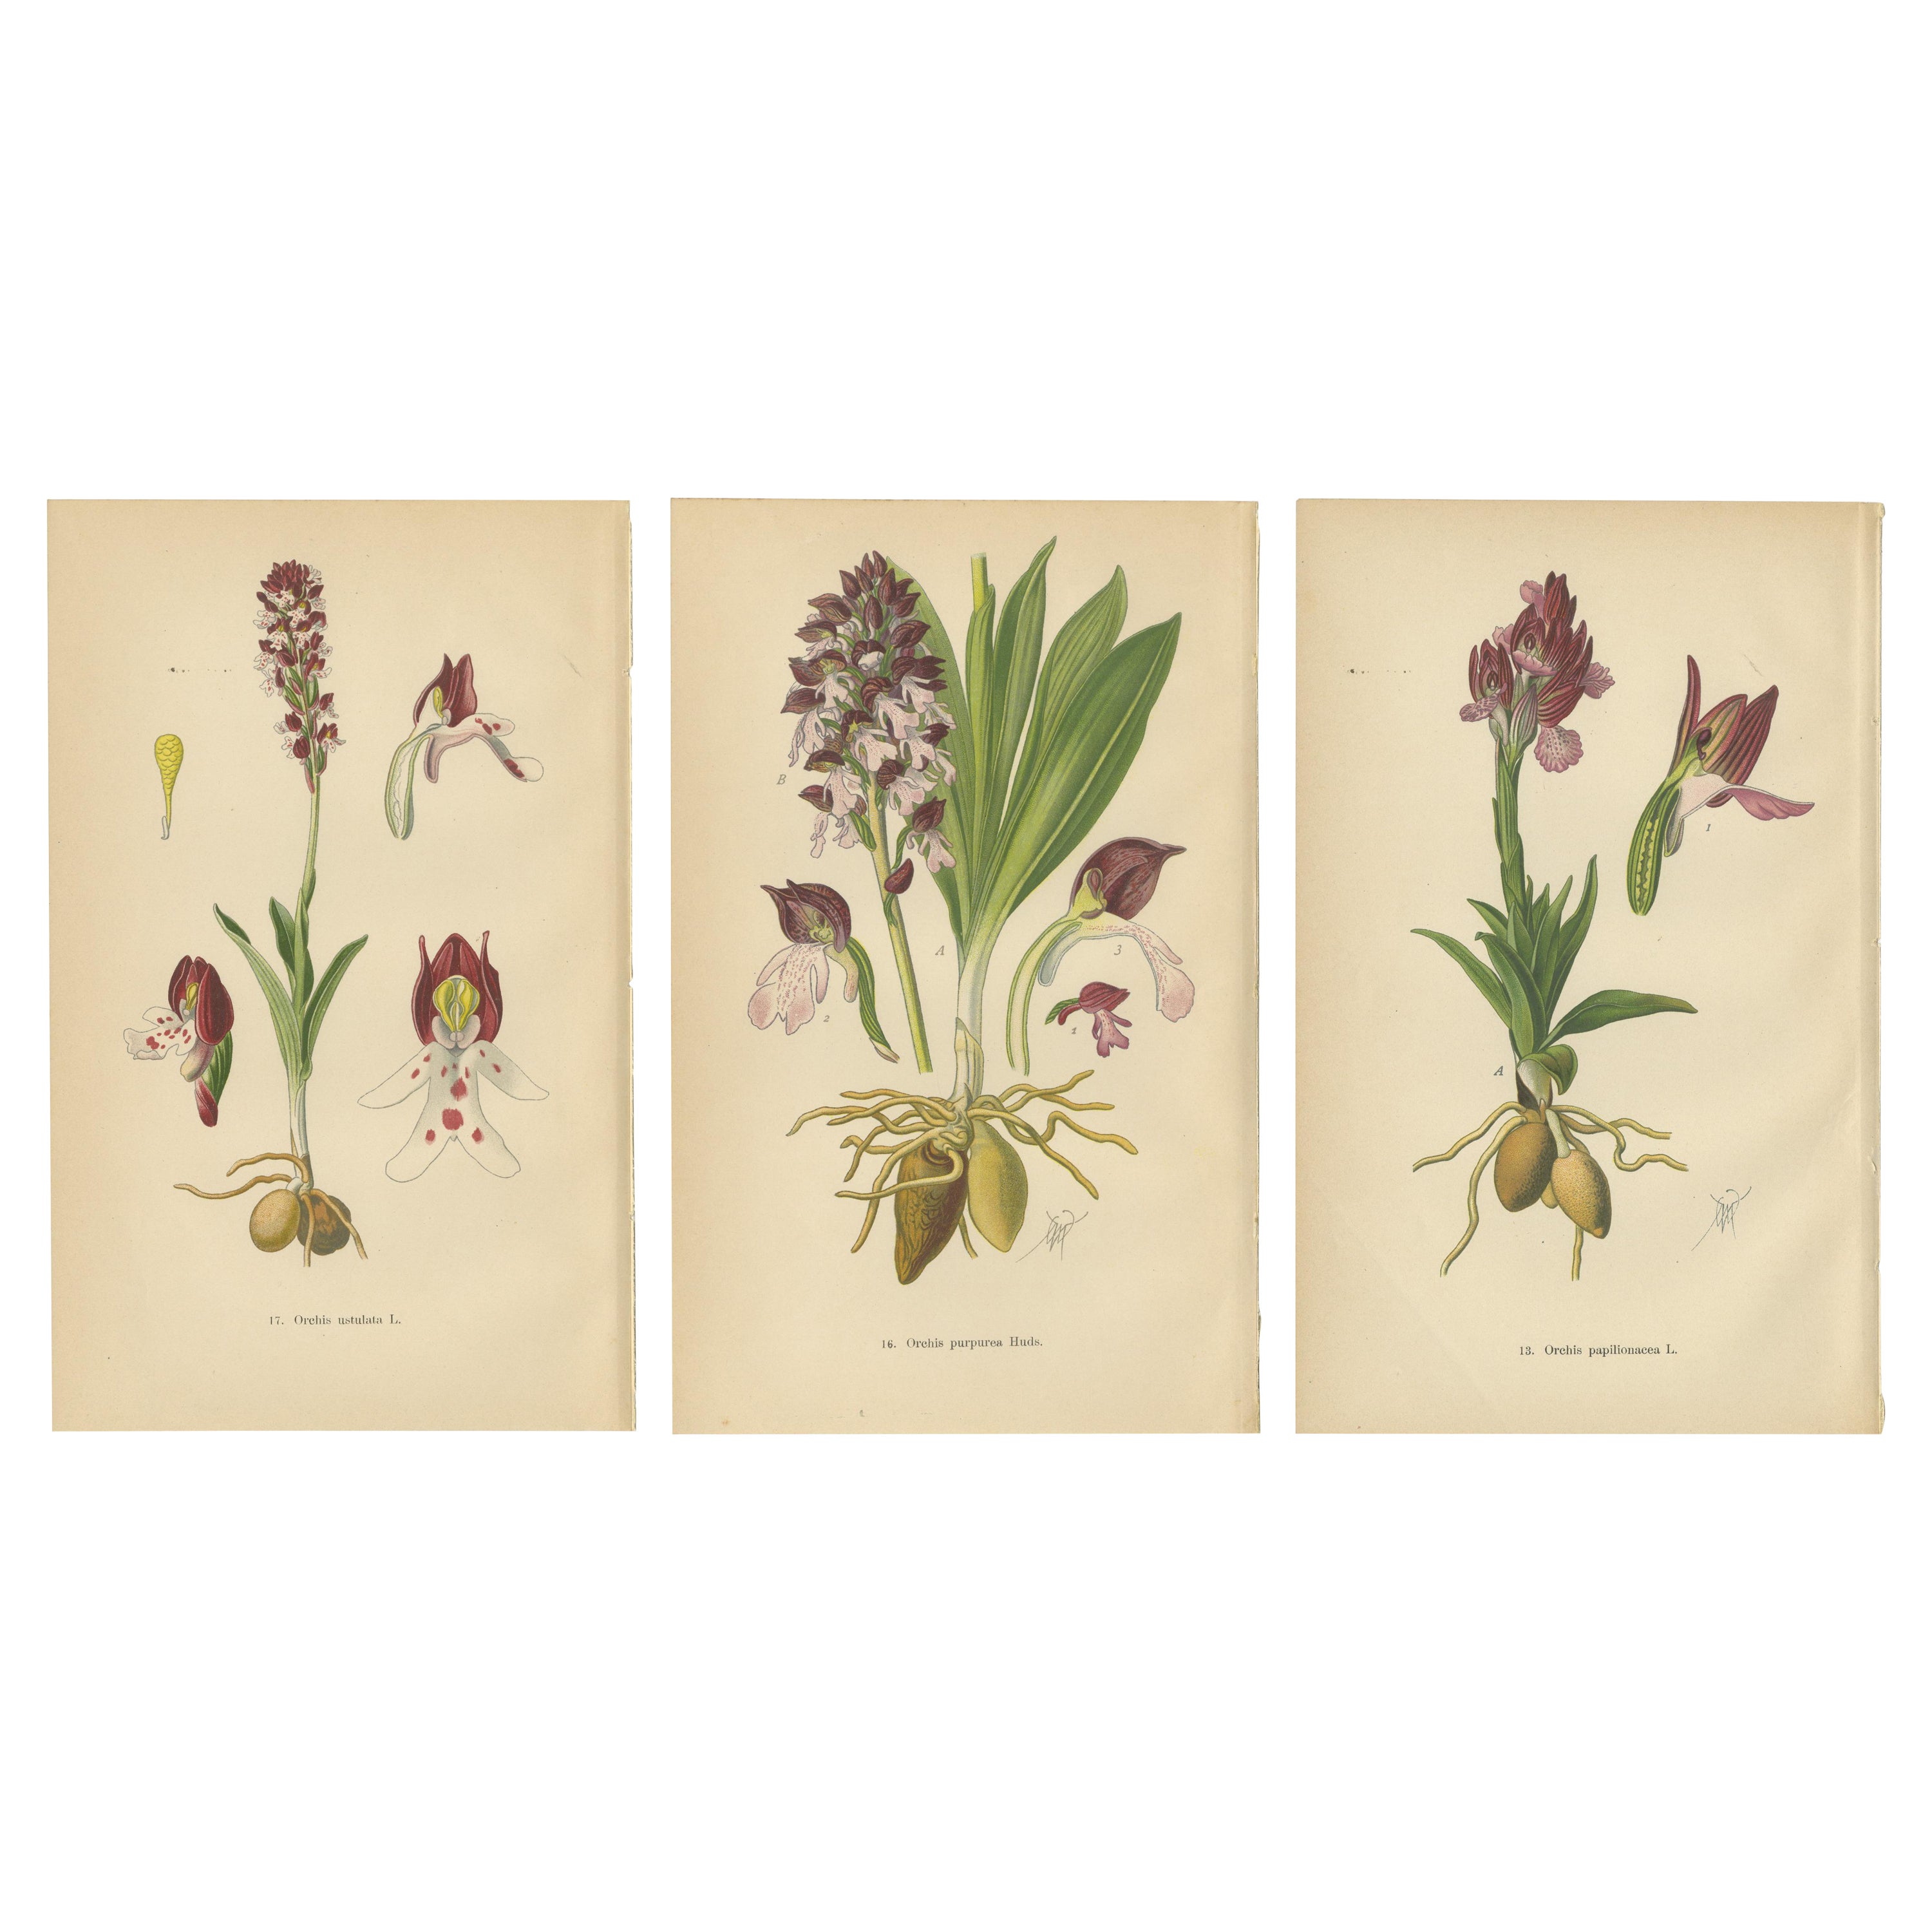 Ephemeral Elegance: Orchids of 1904 in Müller's Illustrations For Sale